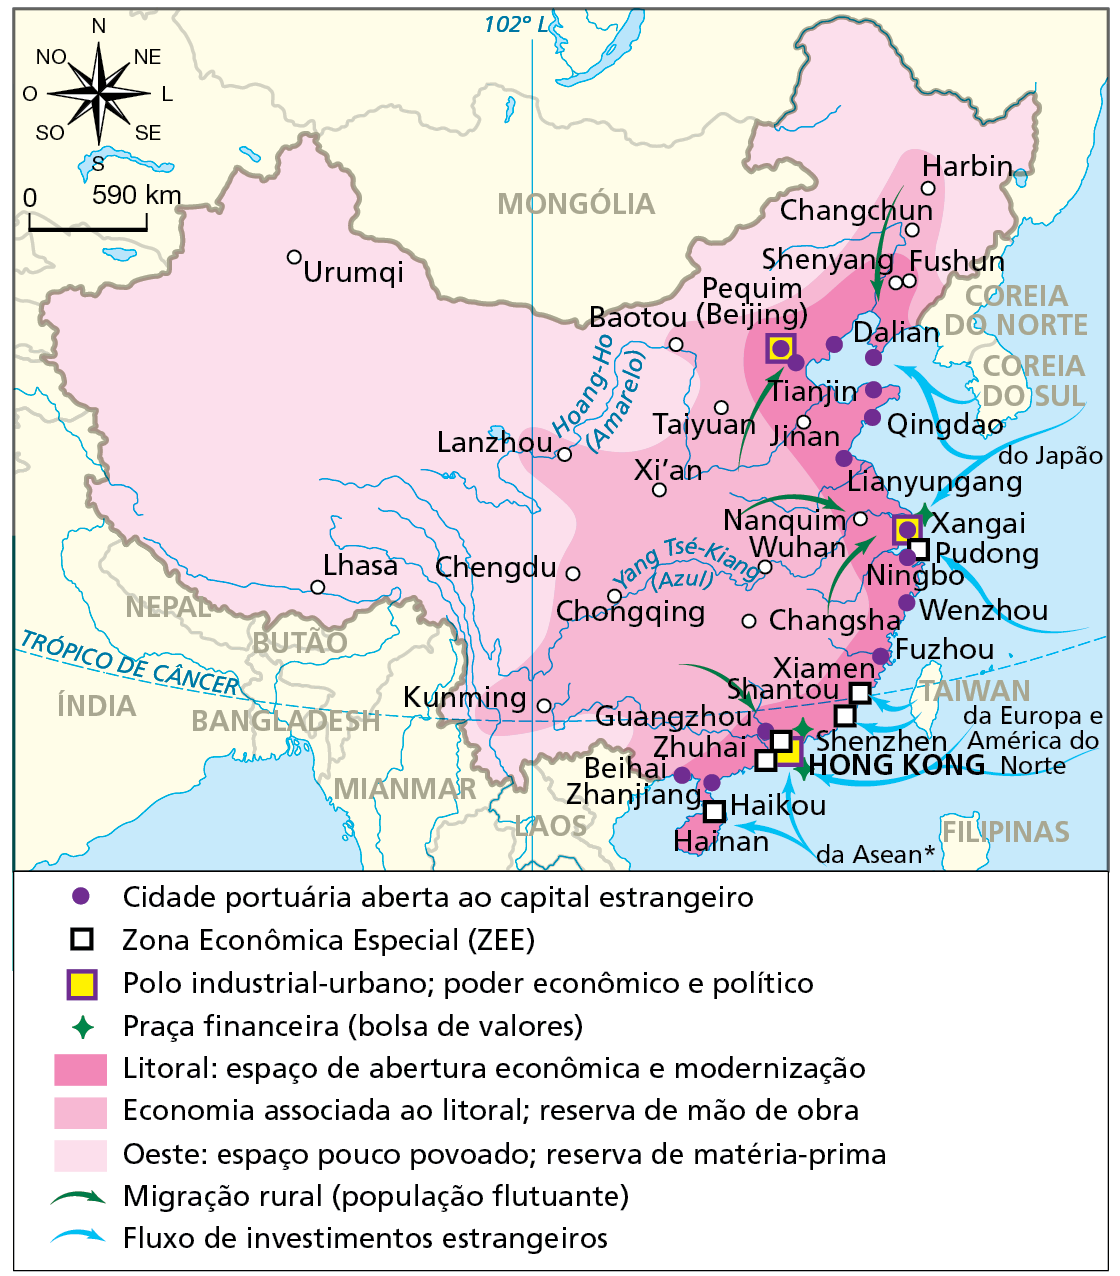 Mapa. China: dinamismo econômico, 2015.  Mapa do leste e sul da Ásia com representação de dados sobre economia chinesa.  Cidade portuária aberta ao capital estrangeiro: Beihai, Zhanjiang, Guangzhou, Fuzhou, Wenzhou, Ningbo, Xangai Lianyungang, Qingdao, Tianjin, Pequim (Beijing) e Dalian. Todas essas cidades ficam na costa leste.  Zona Econômica Especial: Hainan, Zhuhai, Shenzhen, Shantou, Xiamen e Pudong.  Polo industrial-urbano; poder econômico e político: Pequim (Beijing), Xangai e Hong Kong.  Praça financeira (bolsa de valores): Xangai, Shenzhen e Hong Kong.  Litoral: espaço de abertura econômica e modernização, representado por mancha rosa-escuro: toda a porção sul, central e nordeste da costa leste.  Economia associada ao litoral; reserva de mão de obra, representada em rosa: área mais para o interior do país a partir da costa leste.  Oeste: espaço pouco povoado; reserva de matéria-prima, representado em rosa-claro: toda a porção no interior do território a partir da costa leste, ou seja, as porções sul, centro-oeste e noroeste do território.  Migração rural (população flutuante), representada por seta verde: do interior da costa leste em direção a cidades próximas ou no litoral, como Pequim (Beijing), Xangai e Shenzhen.  Fluxo de investimentos estrangeiros, representado por seta azul: da Coreia do do Sul para Dalian e arredores, do Japão para Dalian e Xangai, da Europa e da América do Norte para Hong Kong, de Taiwan para Xiamen e Shantou, e da Associação das Nações do Sudeste Asiático para Hainan e Hong Kong. Acima, rosa dos ventos e escala de 0 a 590 quilômetros.